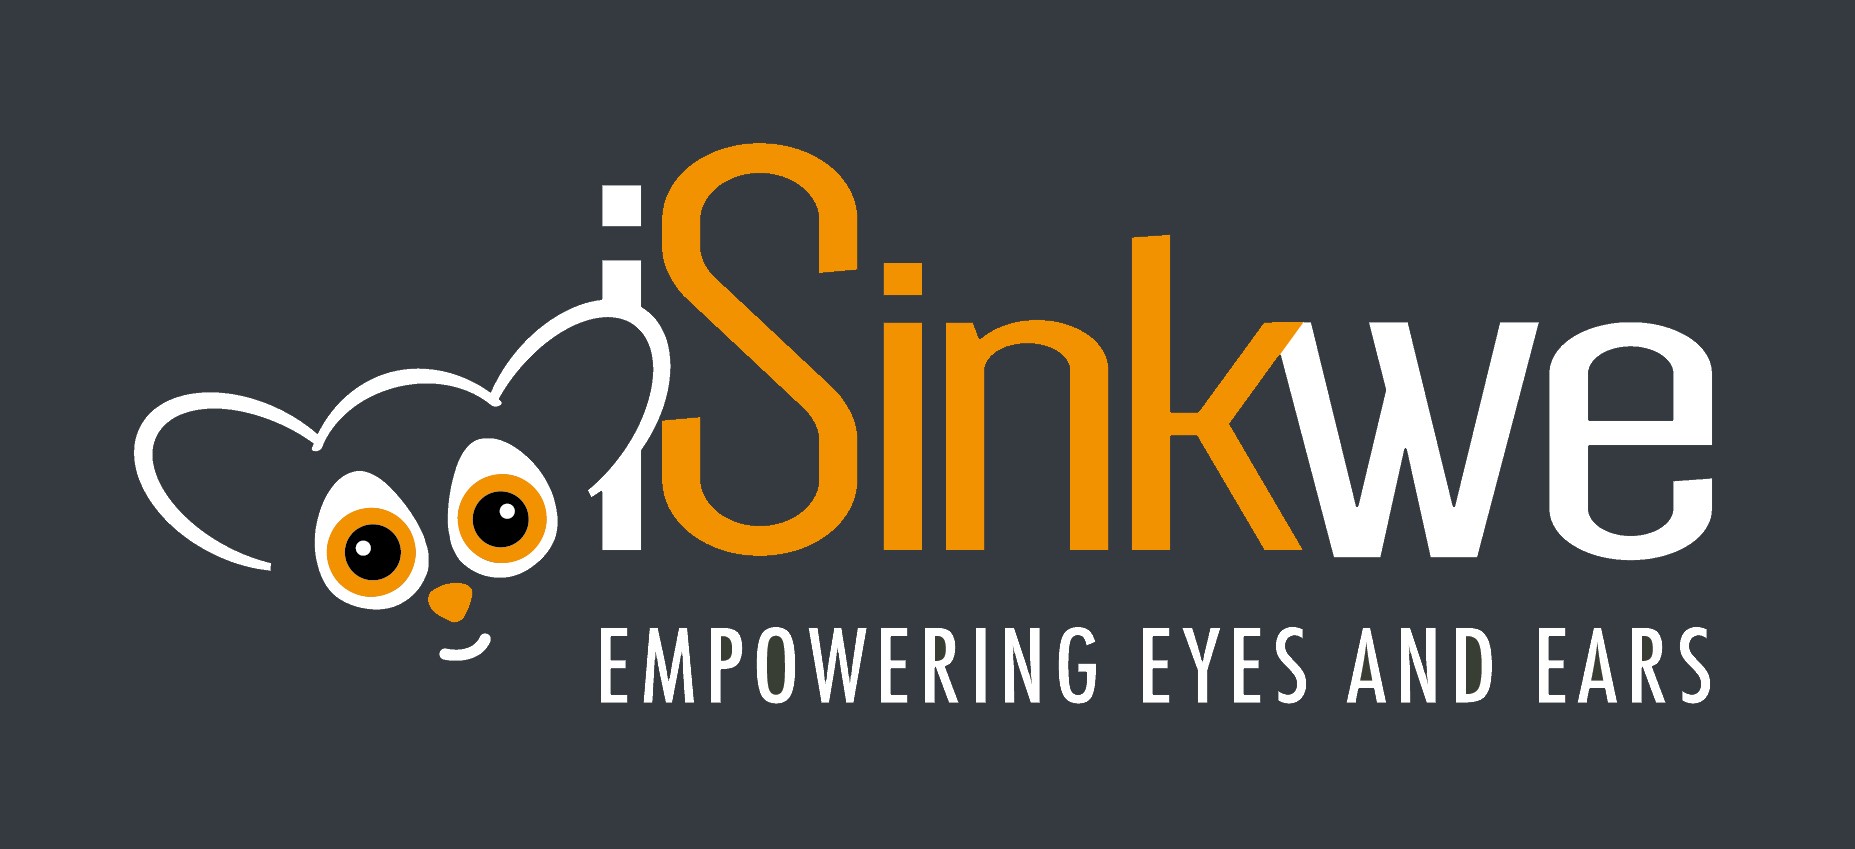 iSinkwe - empowering eyes and ears